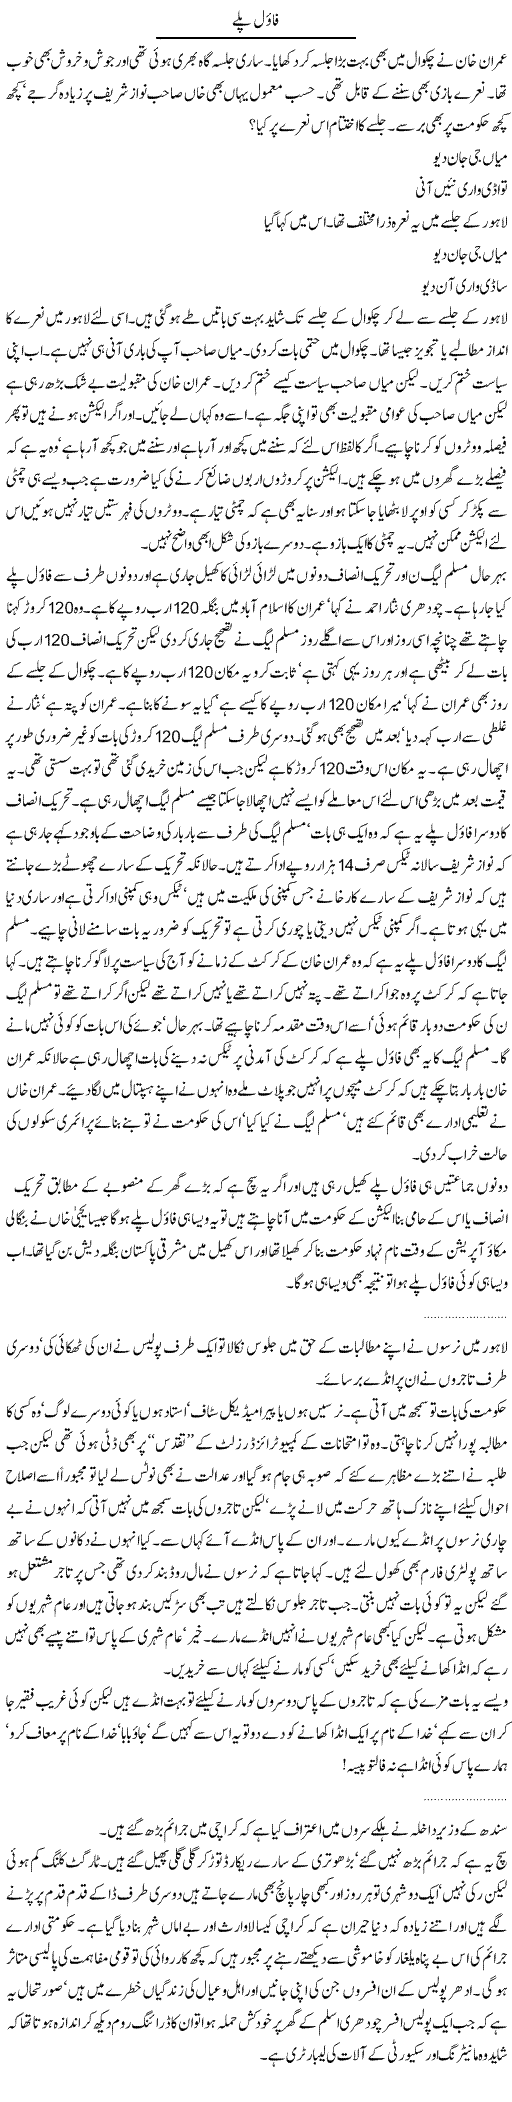 Imran Jalsa Express Column Abdullah Tariq 26 November 2011